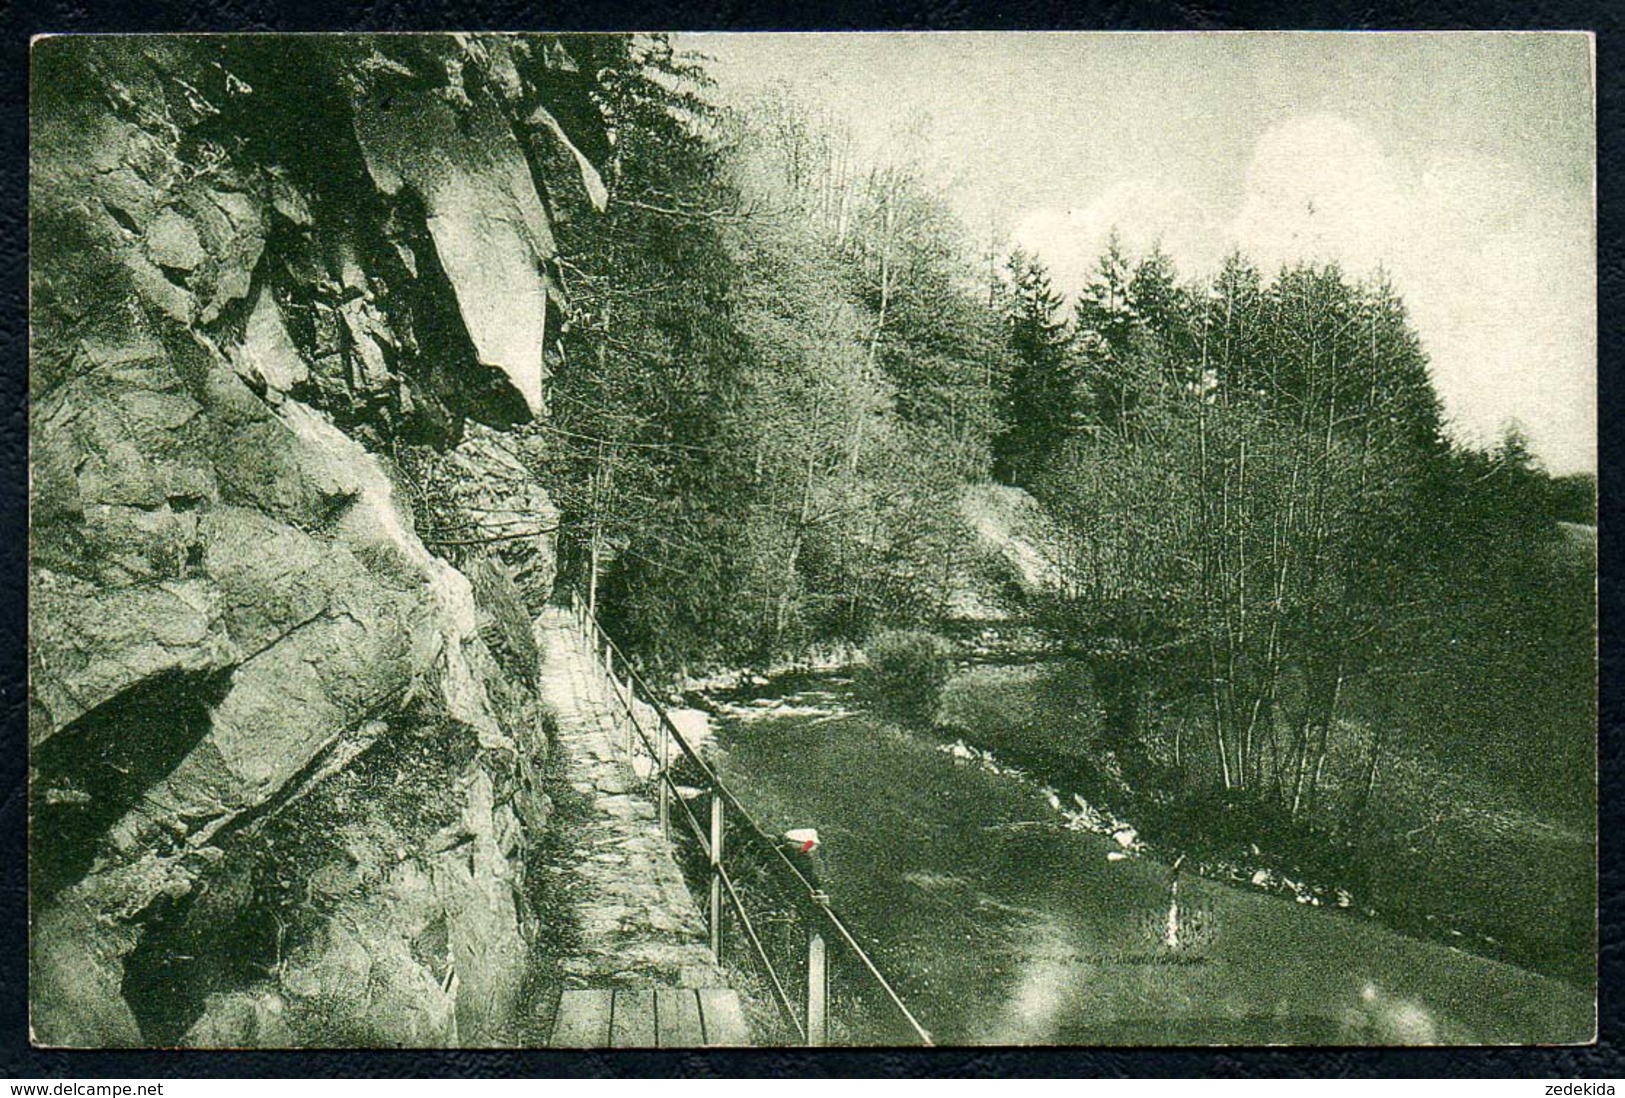 B2315 - Felsenbrücke - Reinsberg - Perle Von Der Grabentour - A. Kersten Siebenlehn - Gel 1927 - Reinsberg (Sachsen)